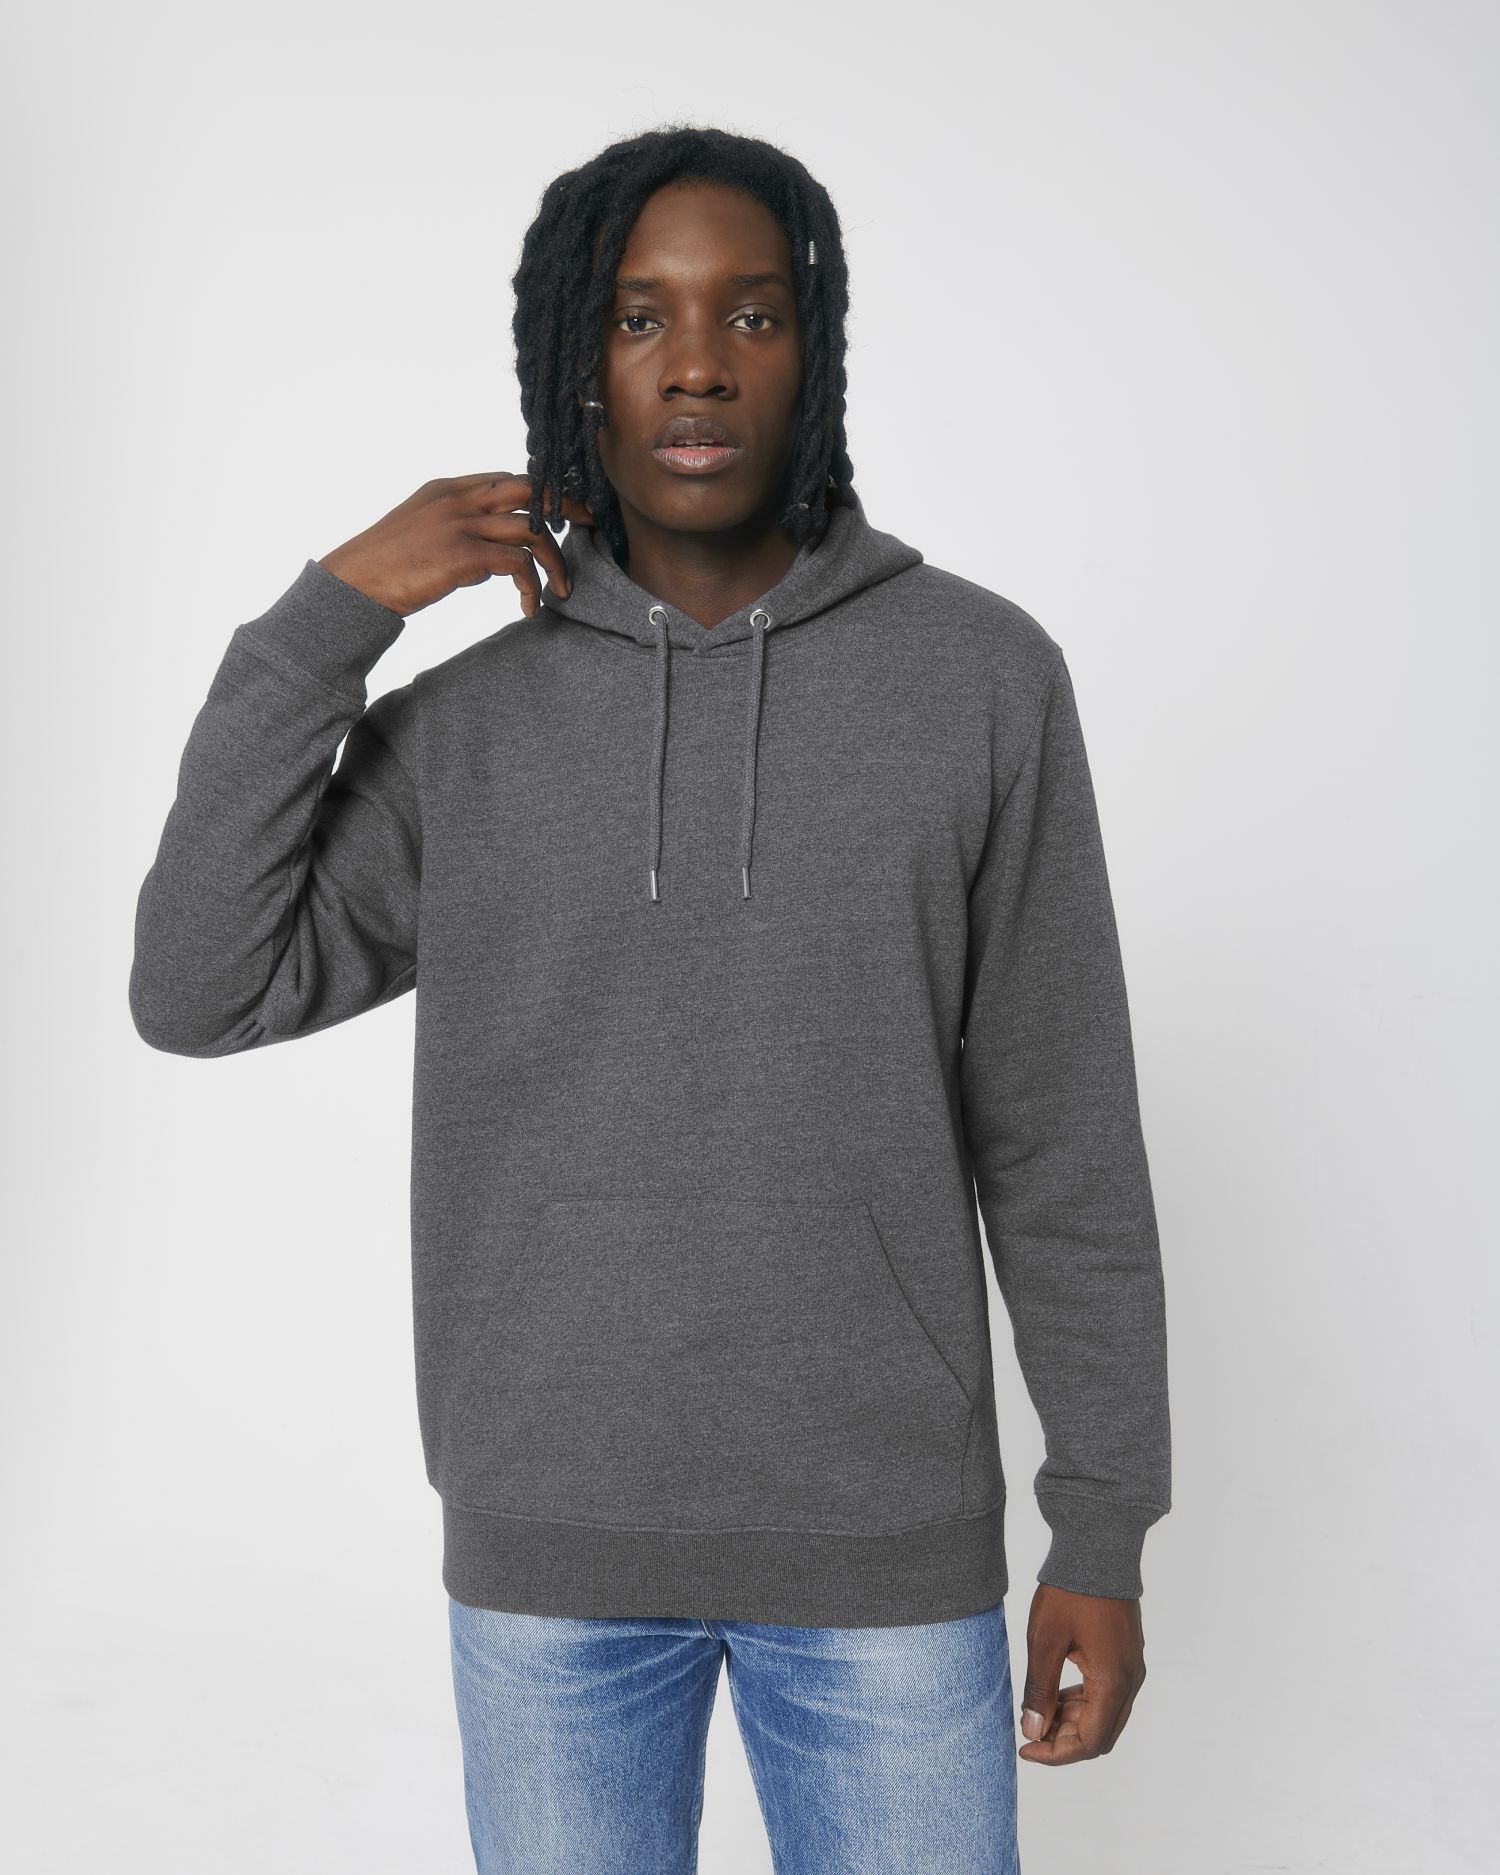 Unisex Hoodie sweatshirts RE-Black M